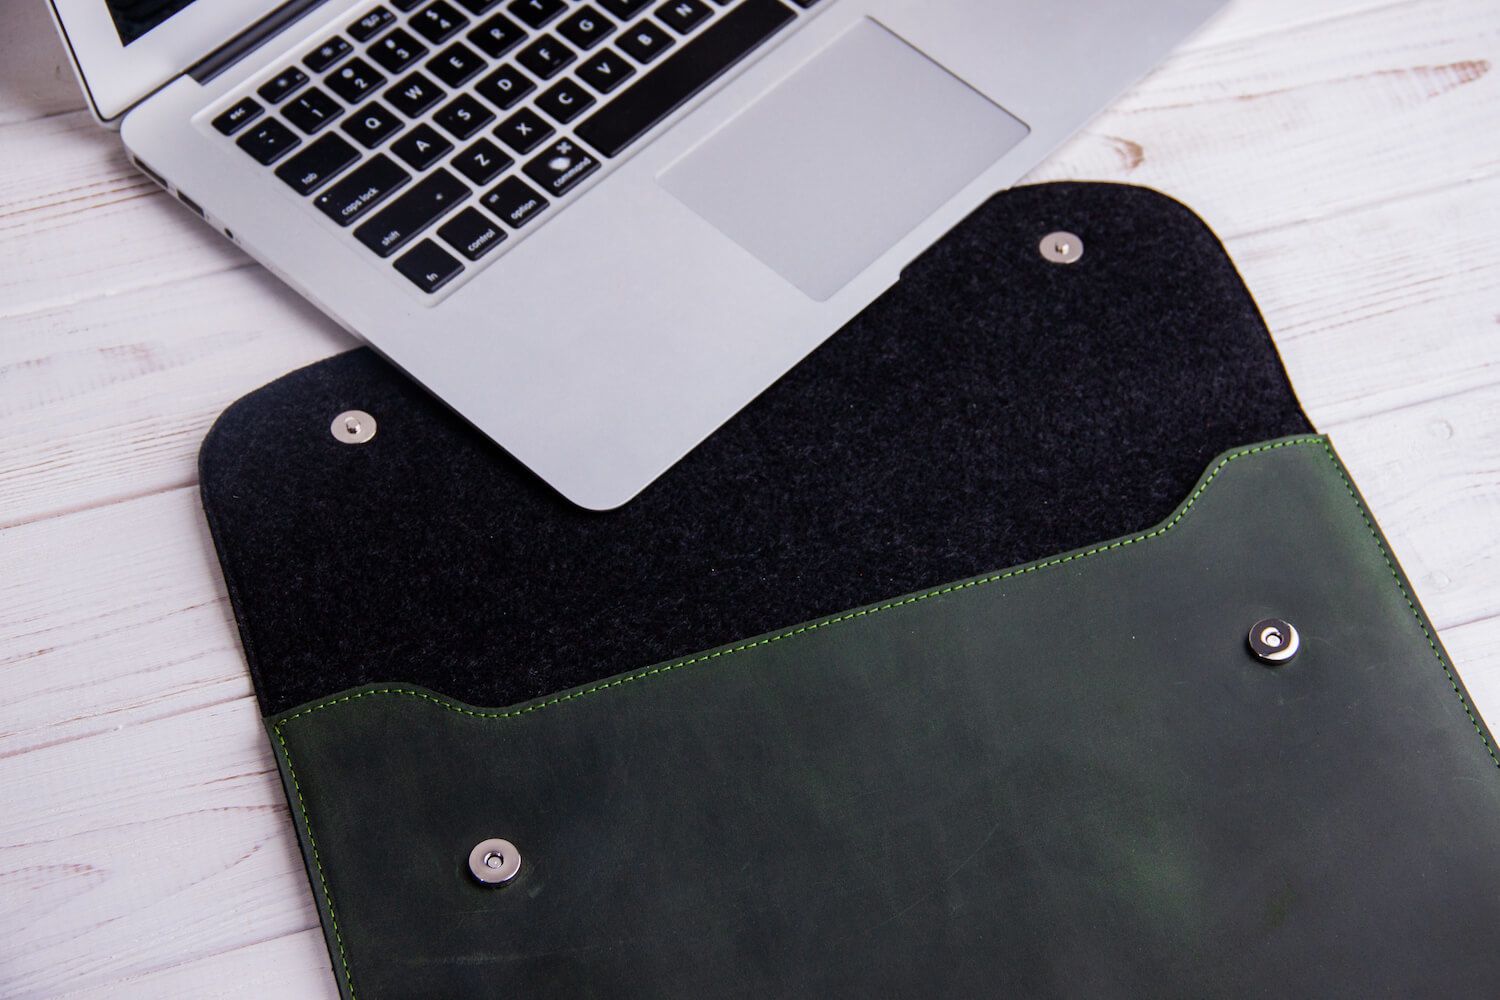 Зеленый кожаный чехол Gmakin для MacBook на кнопках 12